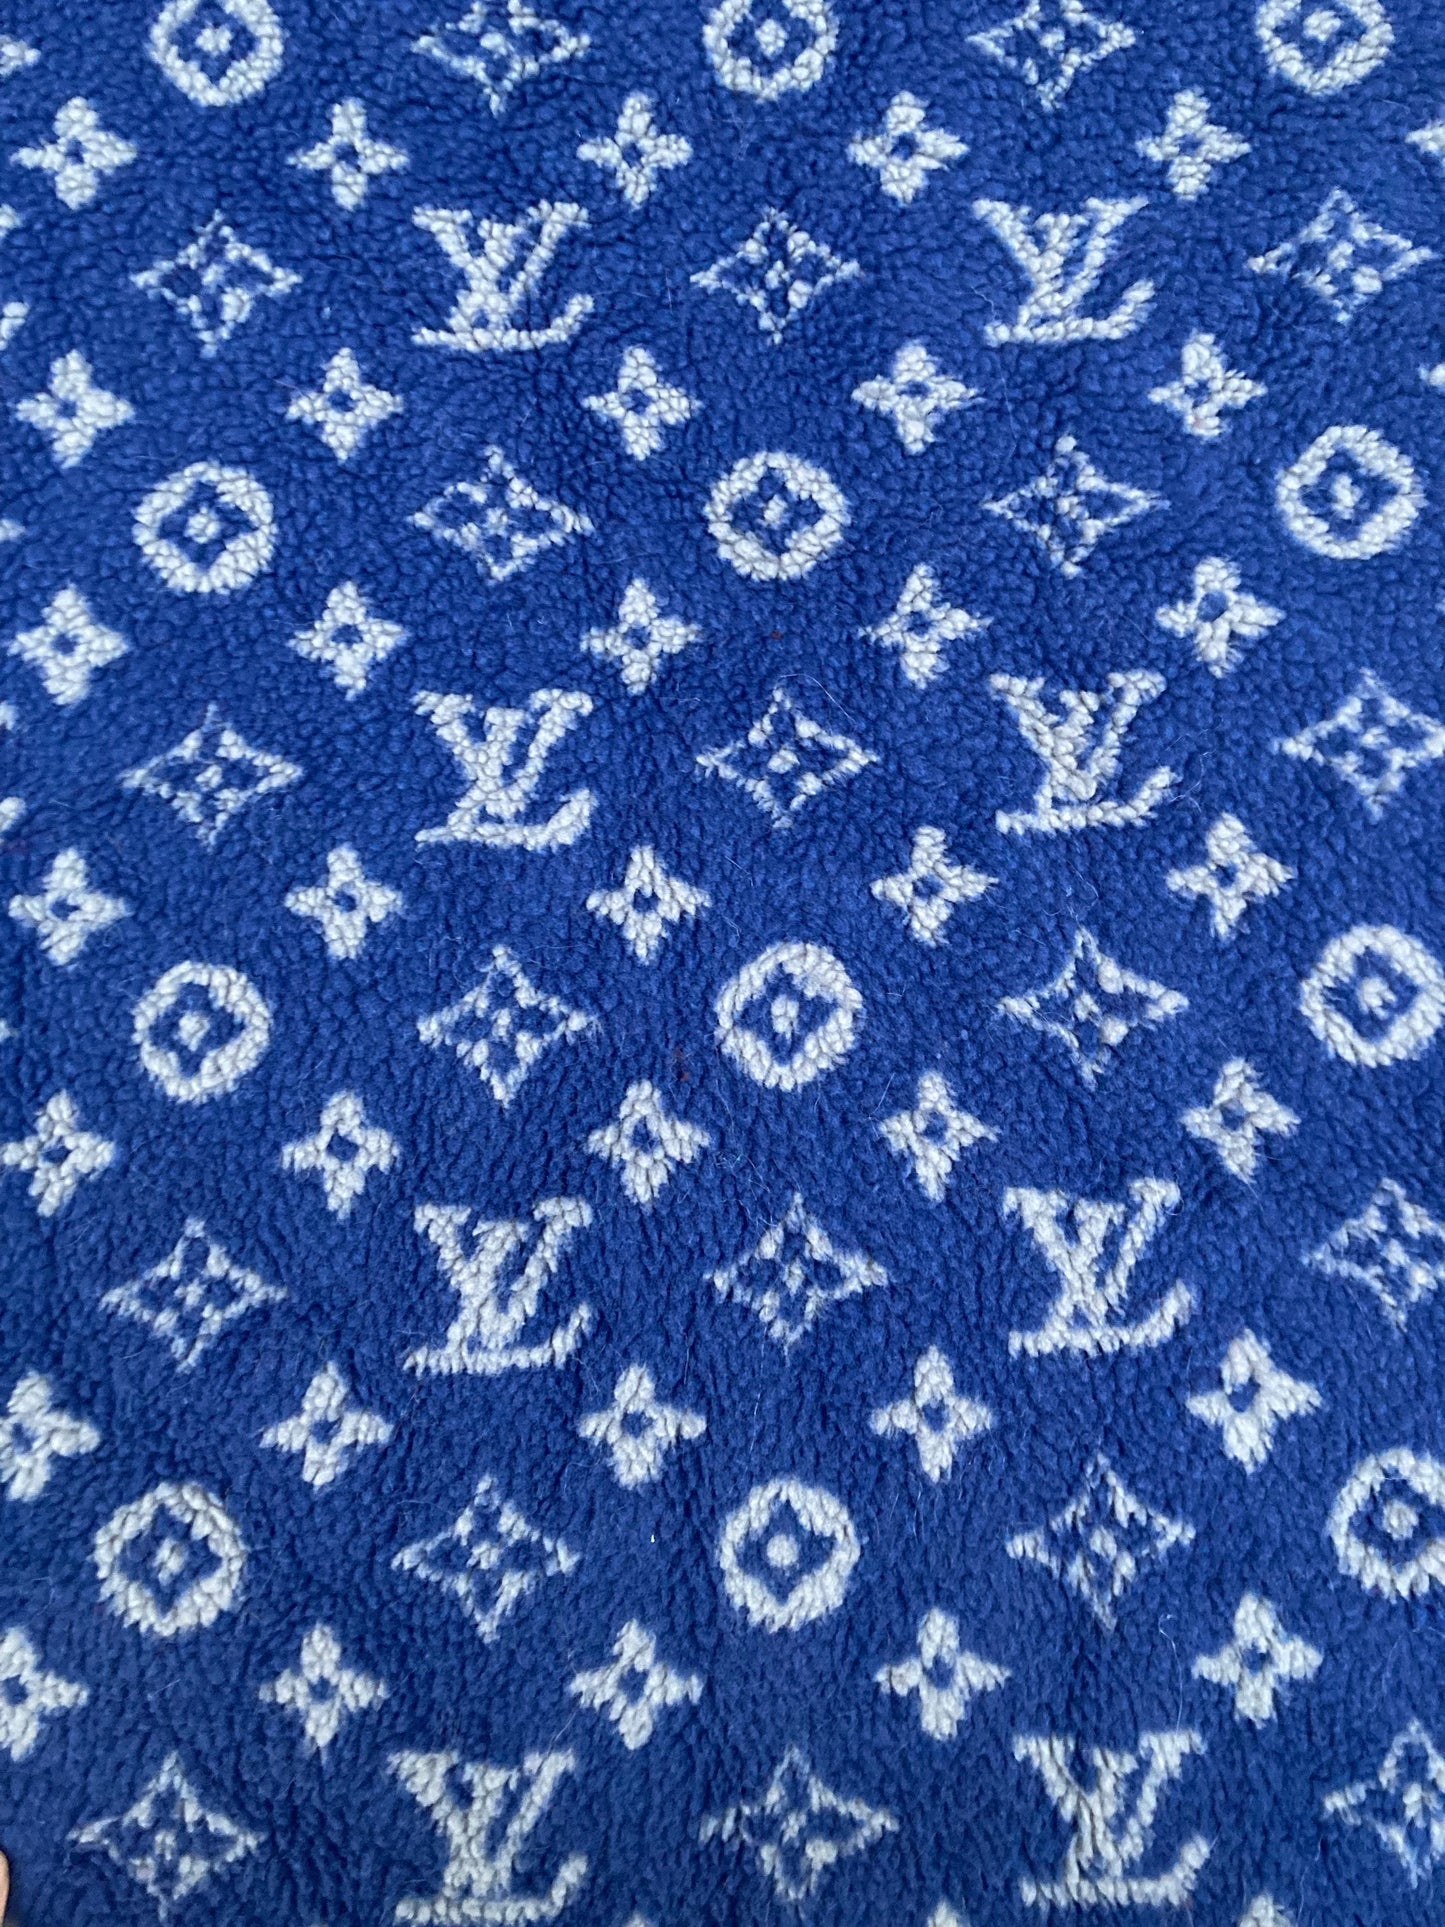 Blue Furry Cozy LV Teddy Flannel Fabric